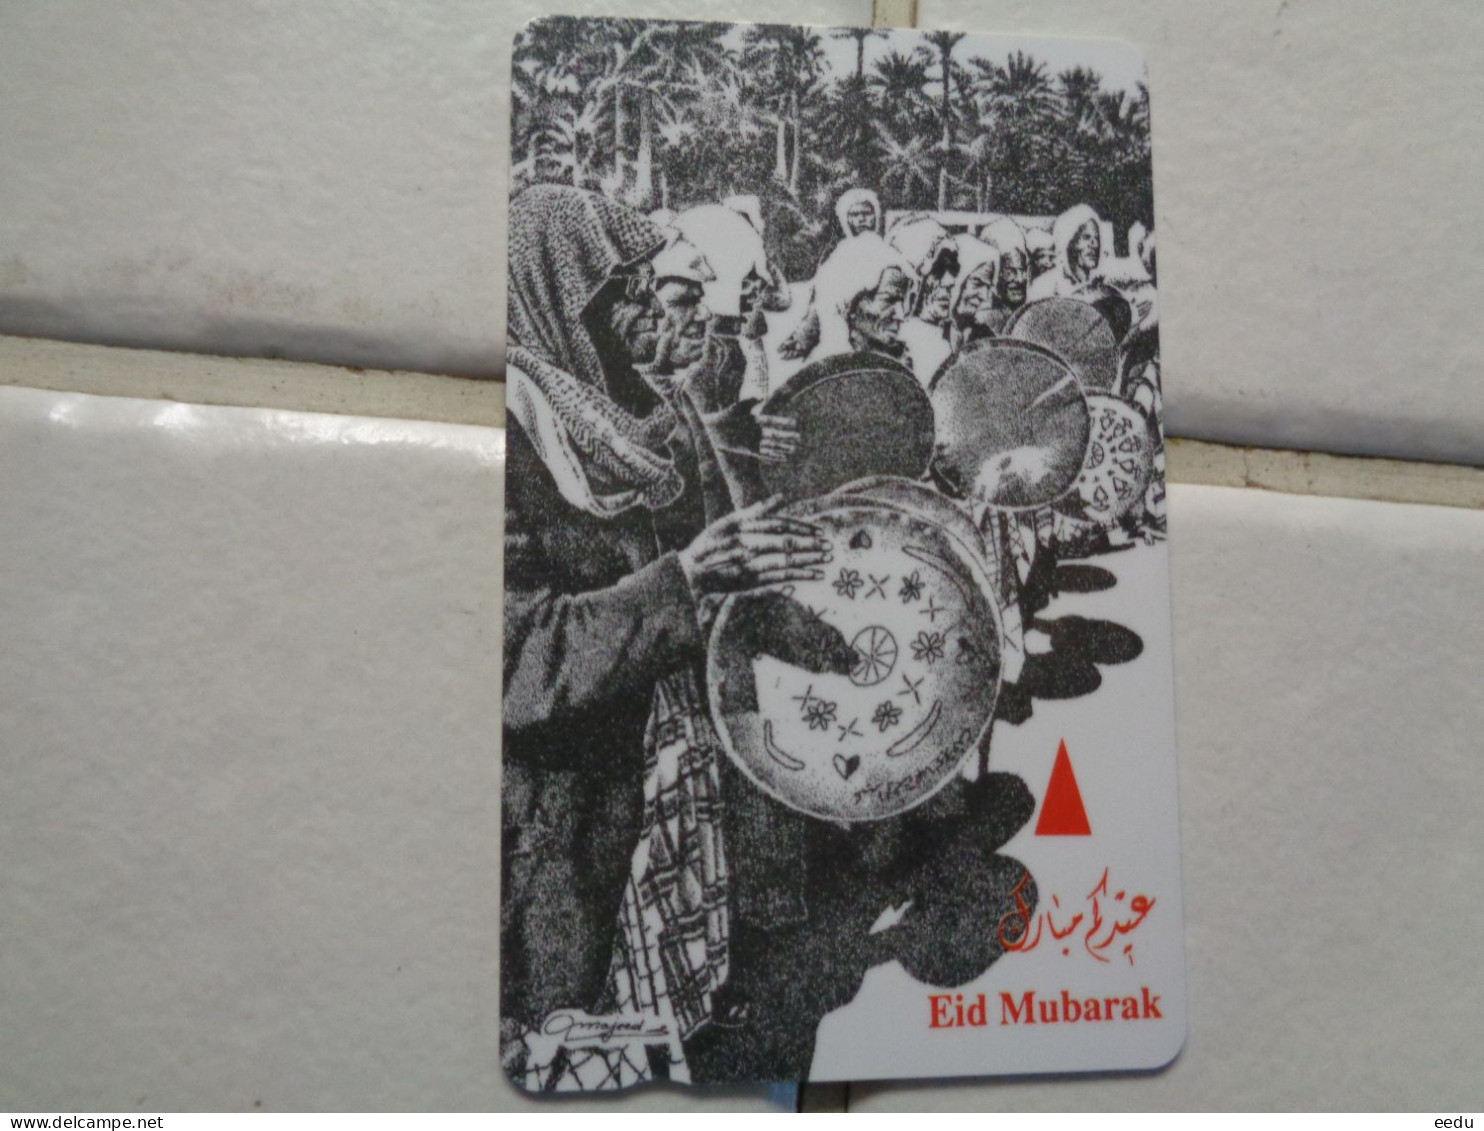 Bahrain Phonecard - Bahrein